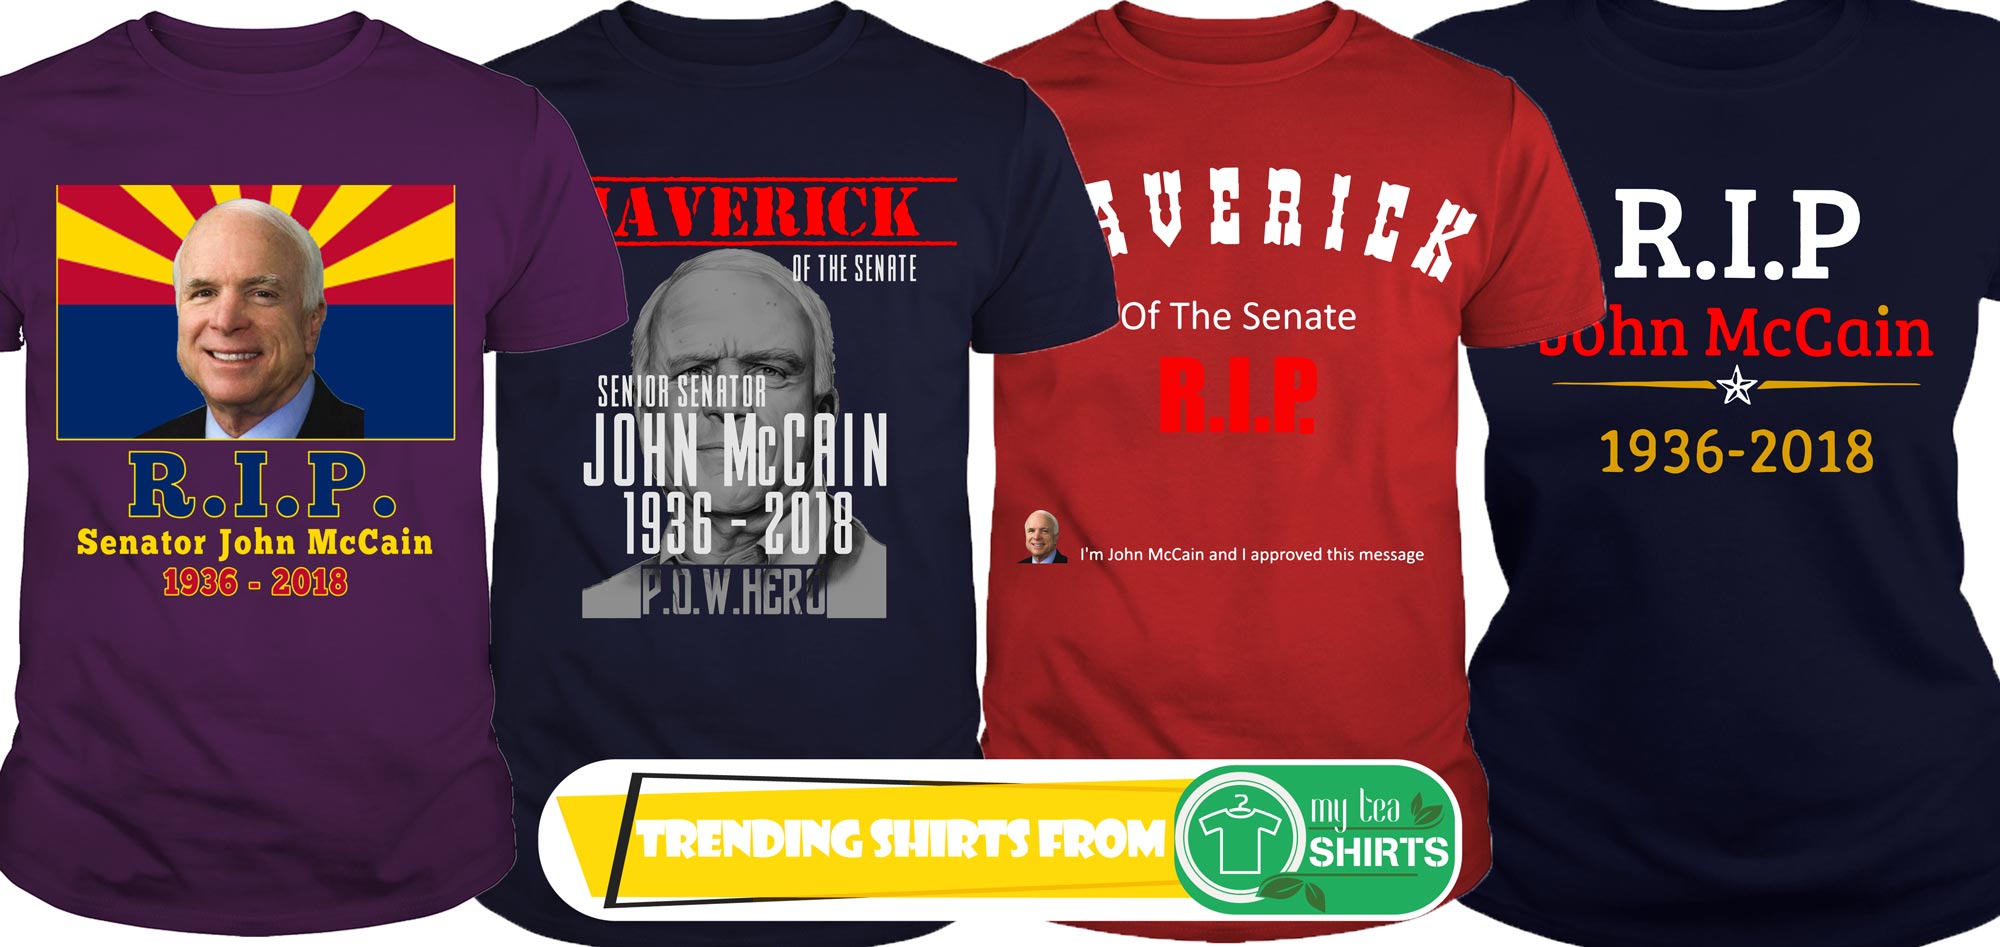 Rip John McCain 1936 2018 shirt - Rip John McCain shirt